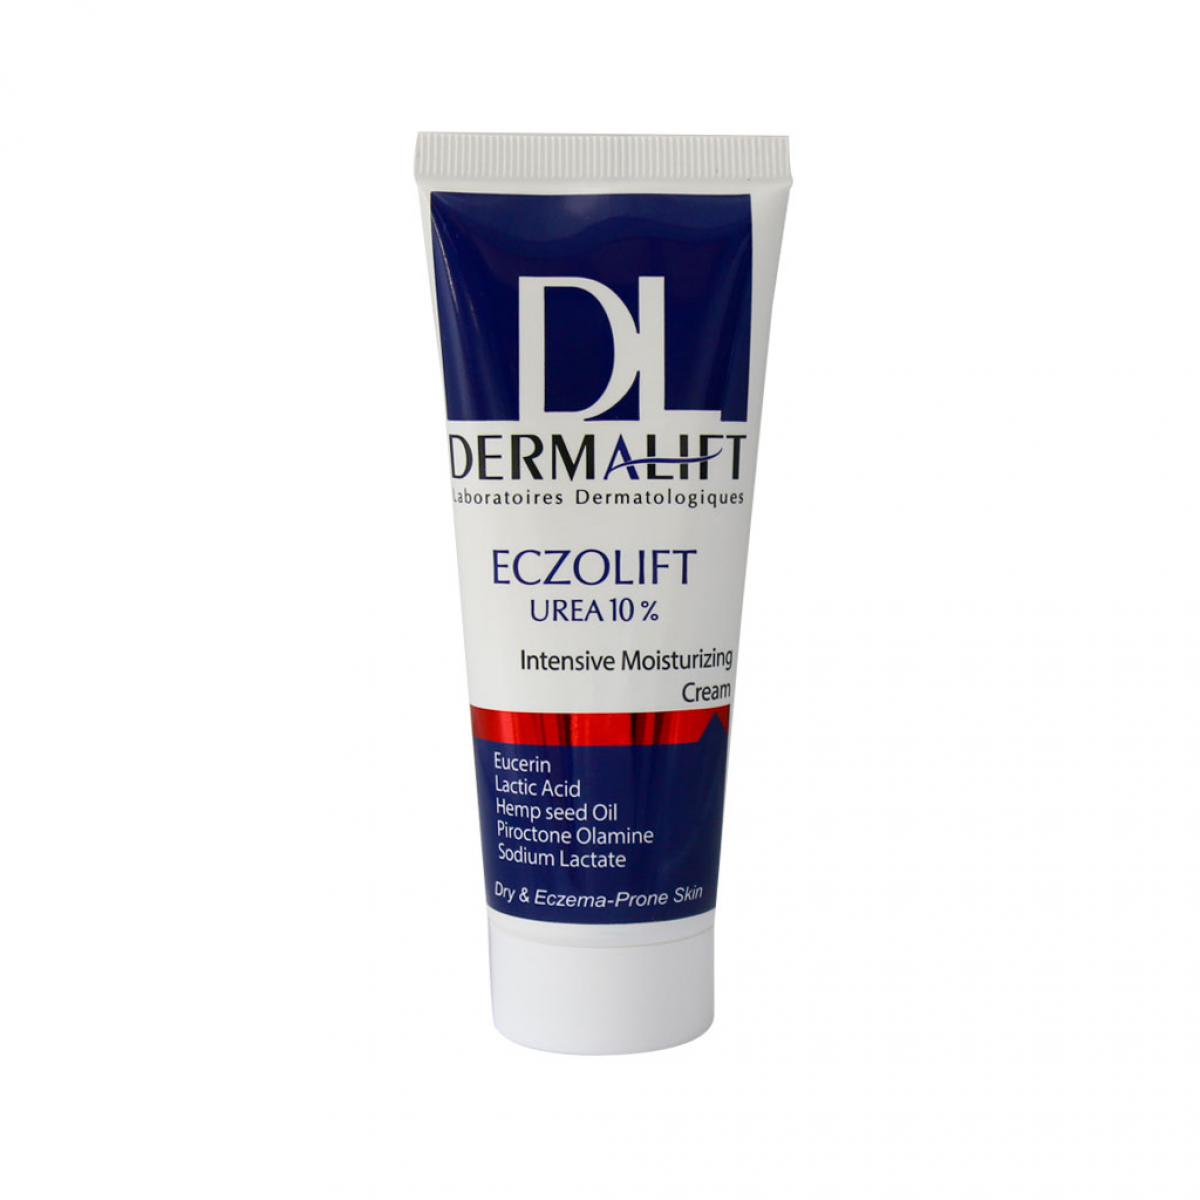 کرم مرطوب کننده و نرم کننده اوره اوسرین 10 درصد  اگزولیفت 75 میل -  Dermalift Eczolift Urea 5% For Dry And Eczema Prone Skin 50 ml 